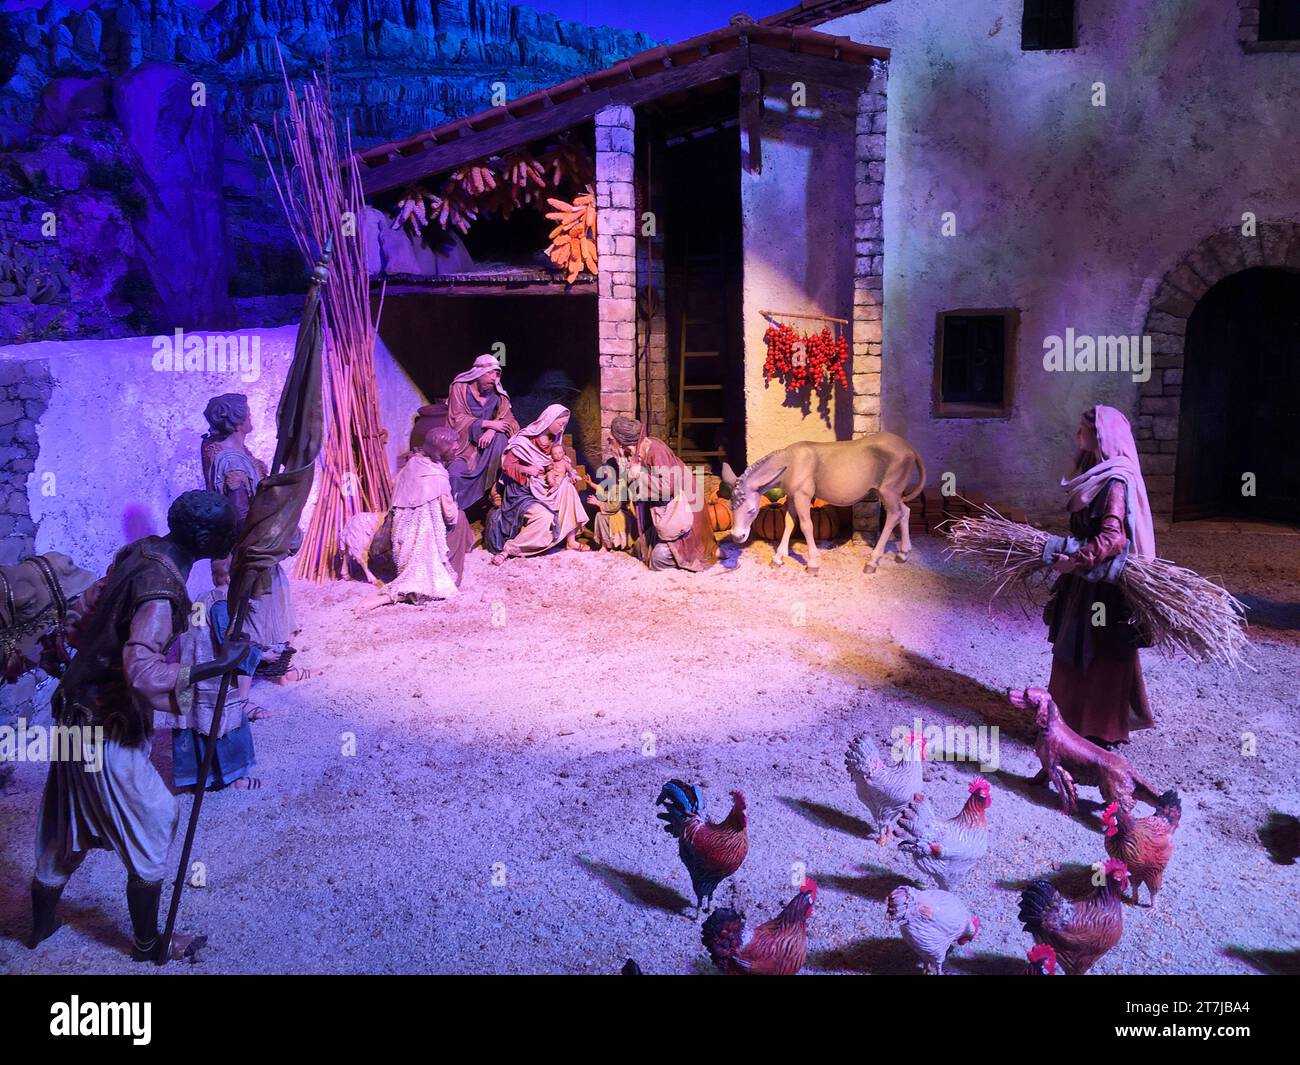 Presepe artigianale: Figure fatte a mano di Gesù, Maria e Giuseppe catturano gli spettatori in questa riverente rappresentazione del presepe natalizio Foto Stock